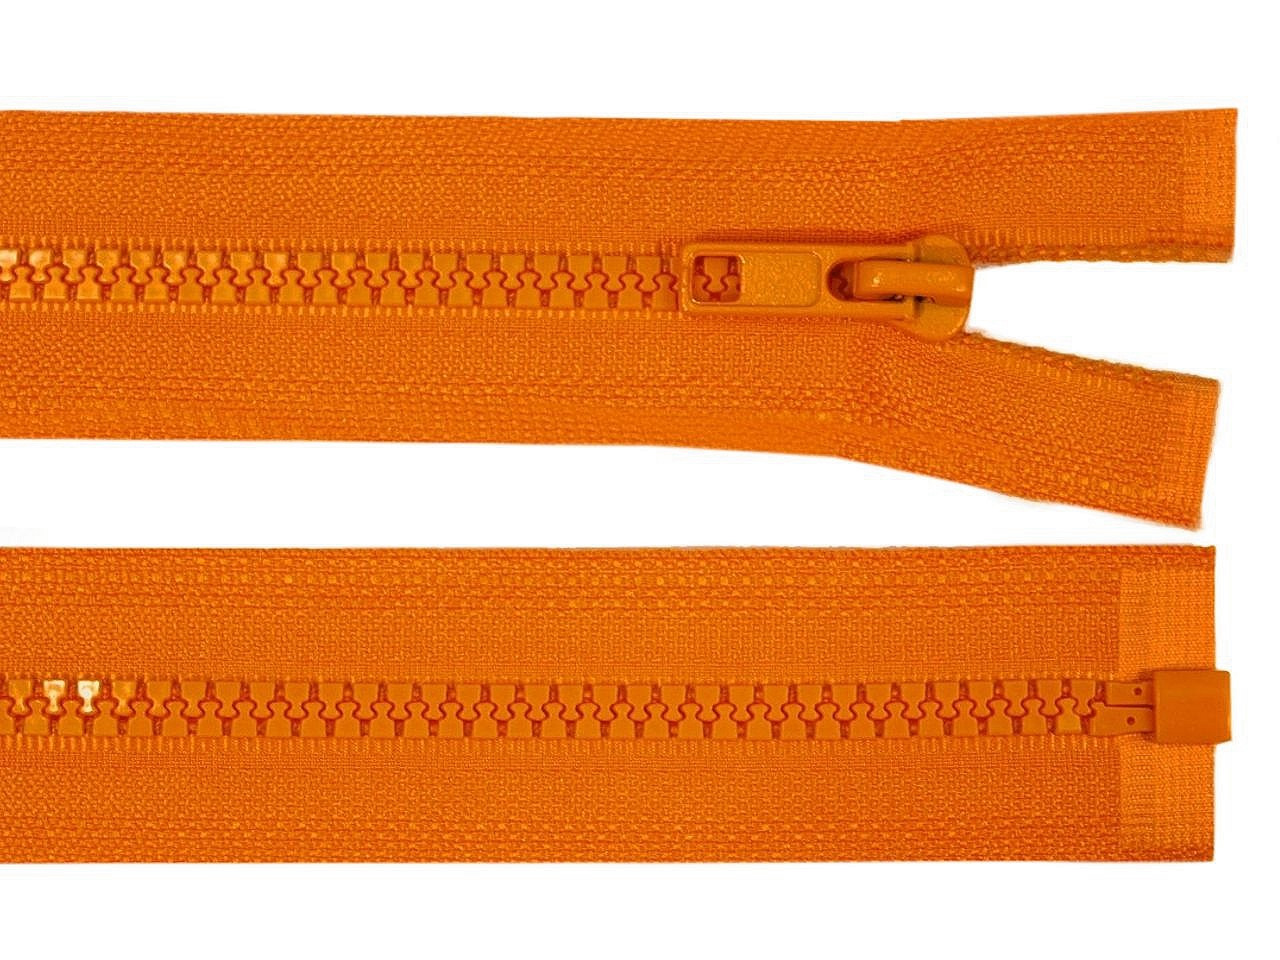 Kostěný zip No 5 délka 85 cm bundový, barva 158 oranžová